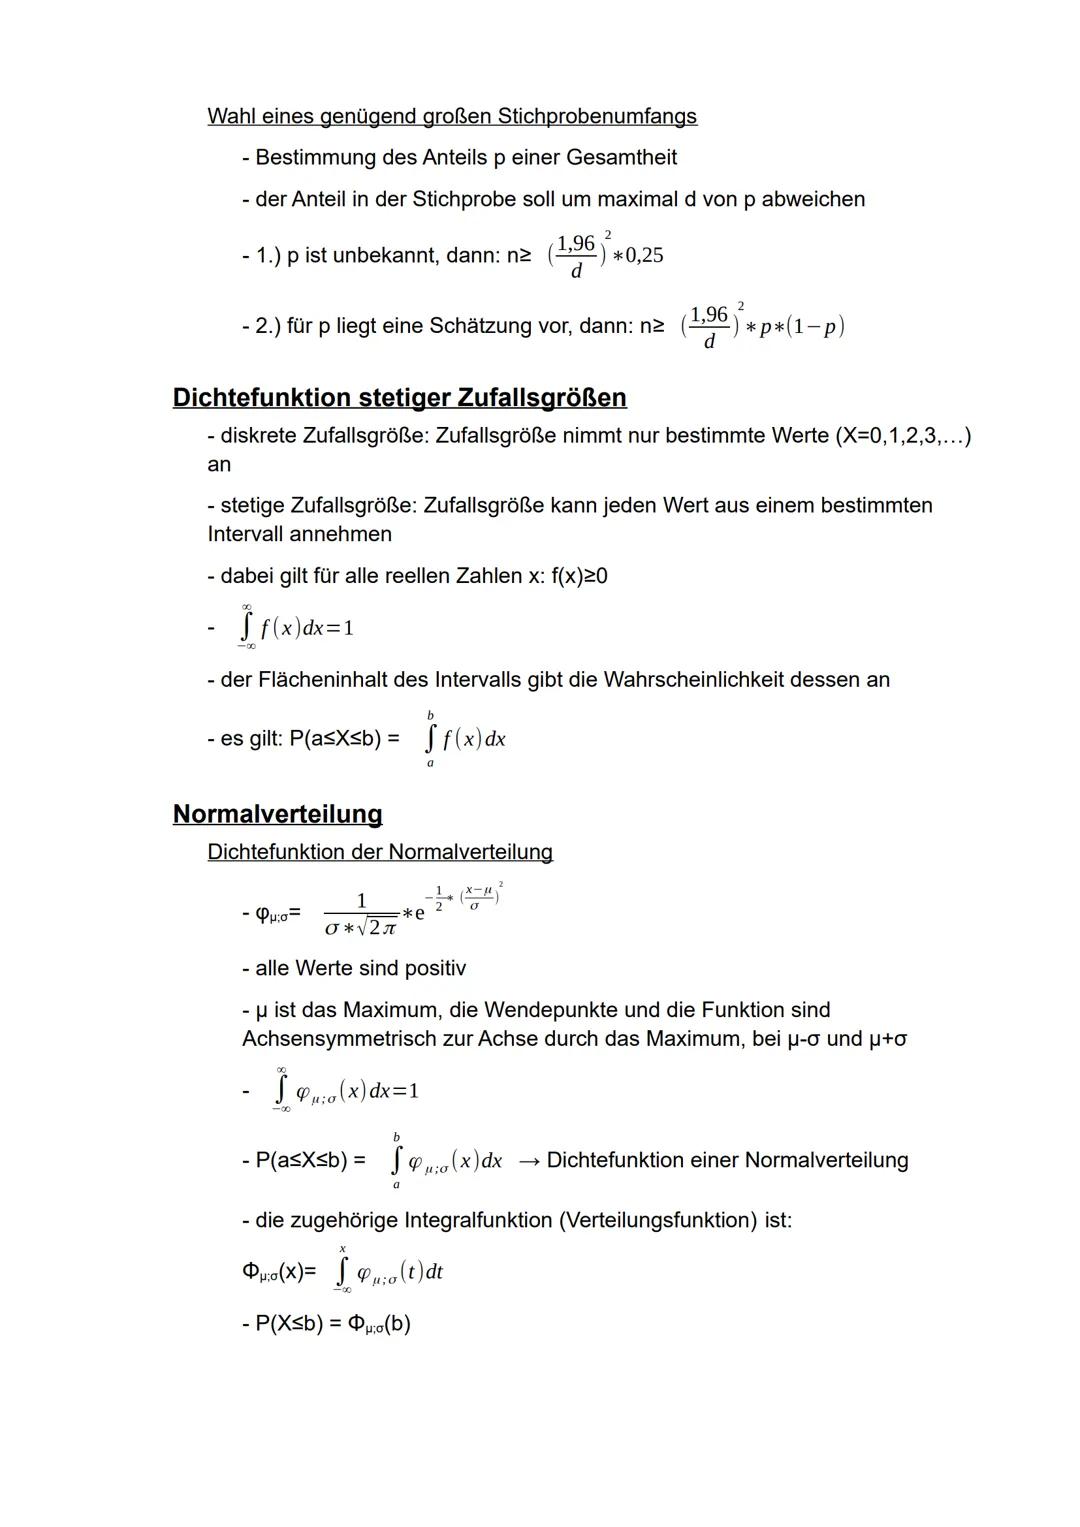 Mathematik
eA
Semester 2
- Stochastik - Inhaltsverzeichnis
Wahrscheinlichkeitsrechnung..
Vierfeldertafel..
Bedingte Wahrscheinlichkeit..
Wah